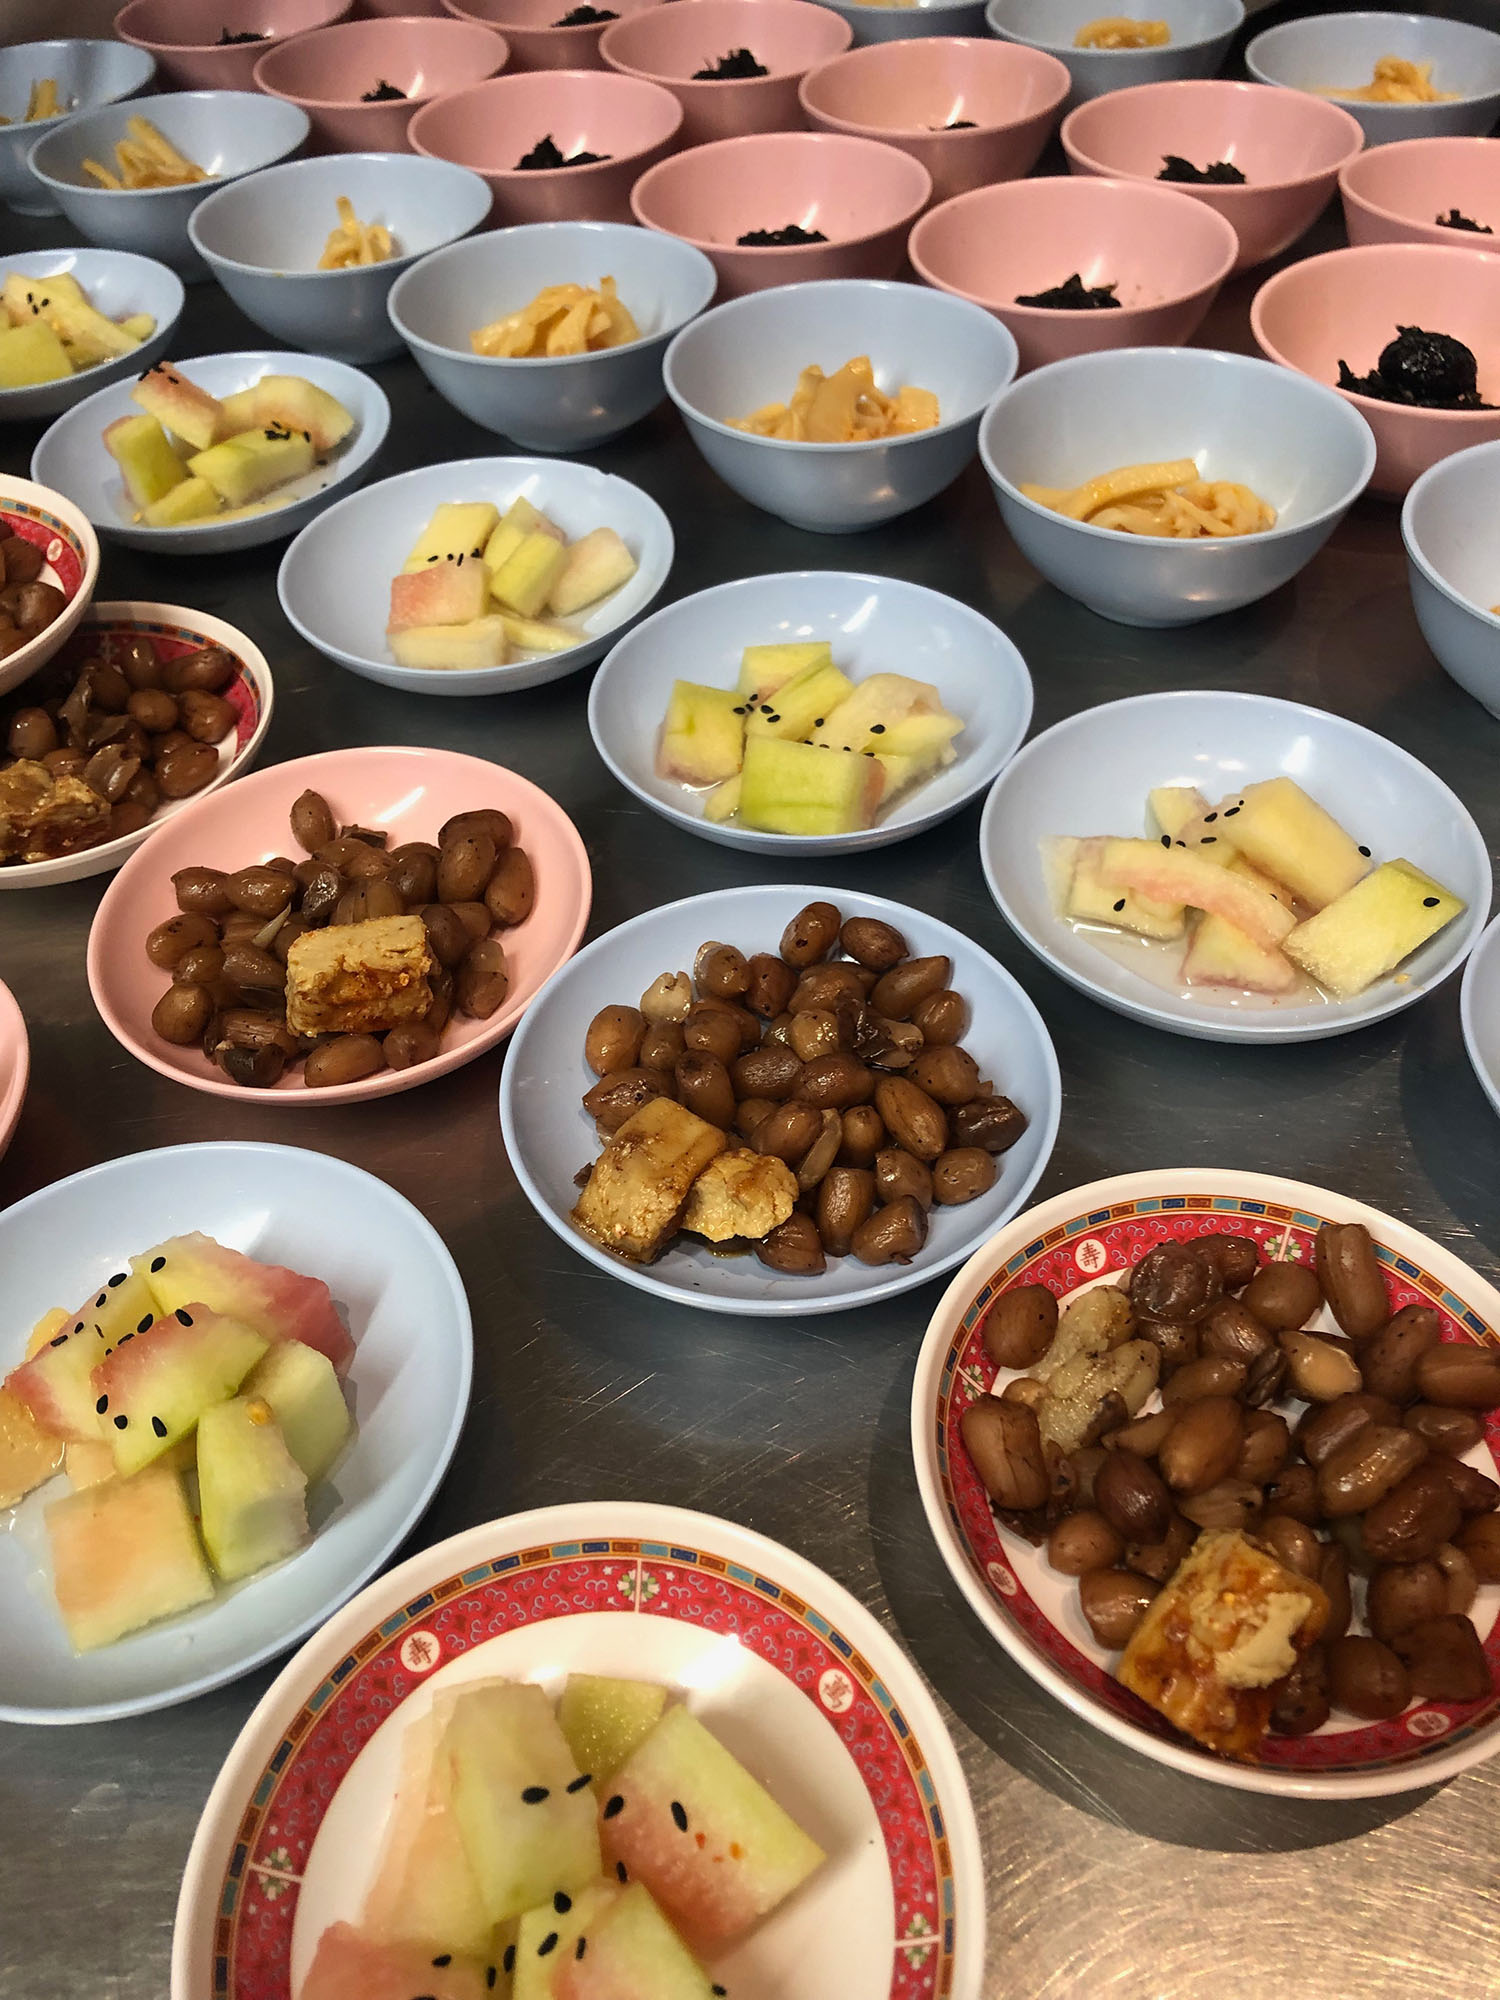 Ein Foto vom Rice is Life Event vom 19.05.2019 zeigt Früchte und Snacks auf hellblauen und rosanen Tellern.